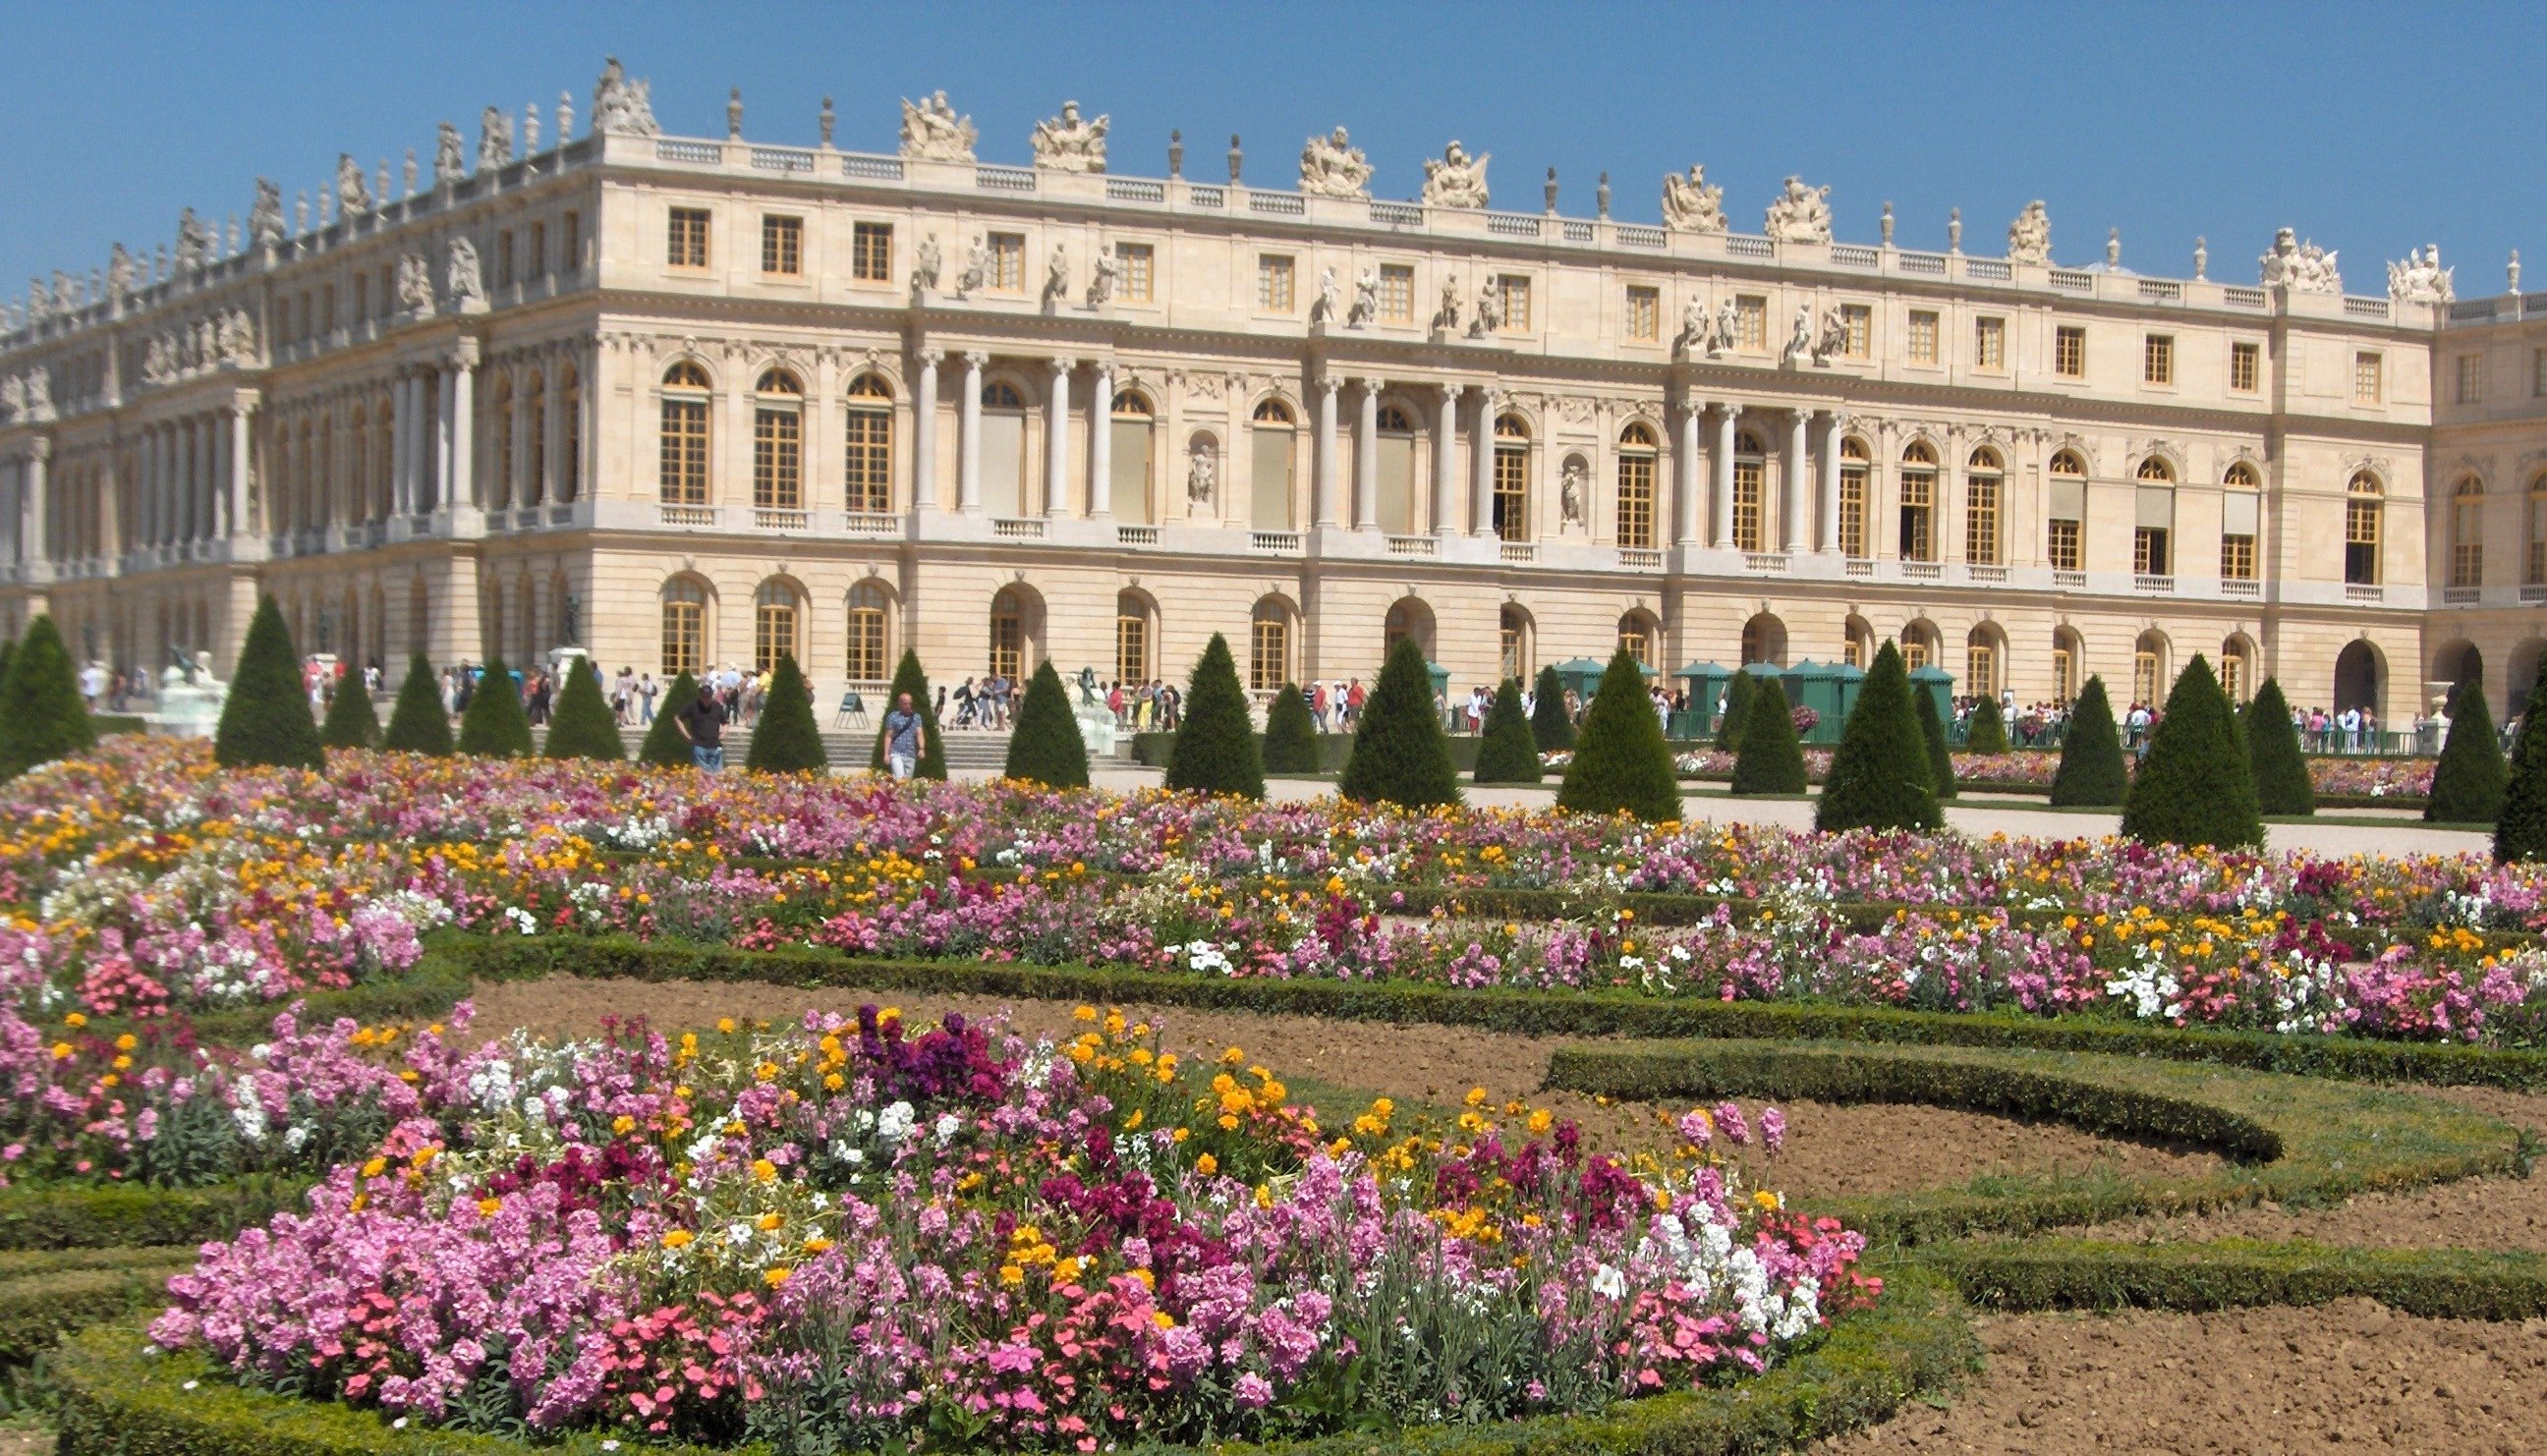 Версальский дворец дворцы Франции. Дворец Версаль версальный парк. Замок Версаль (Chateau de Versailles). Мраморный двор Версальского дворца. Почему версаль